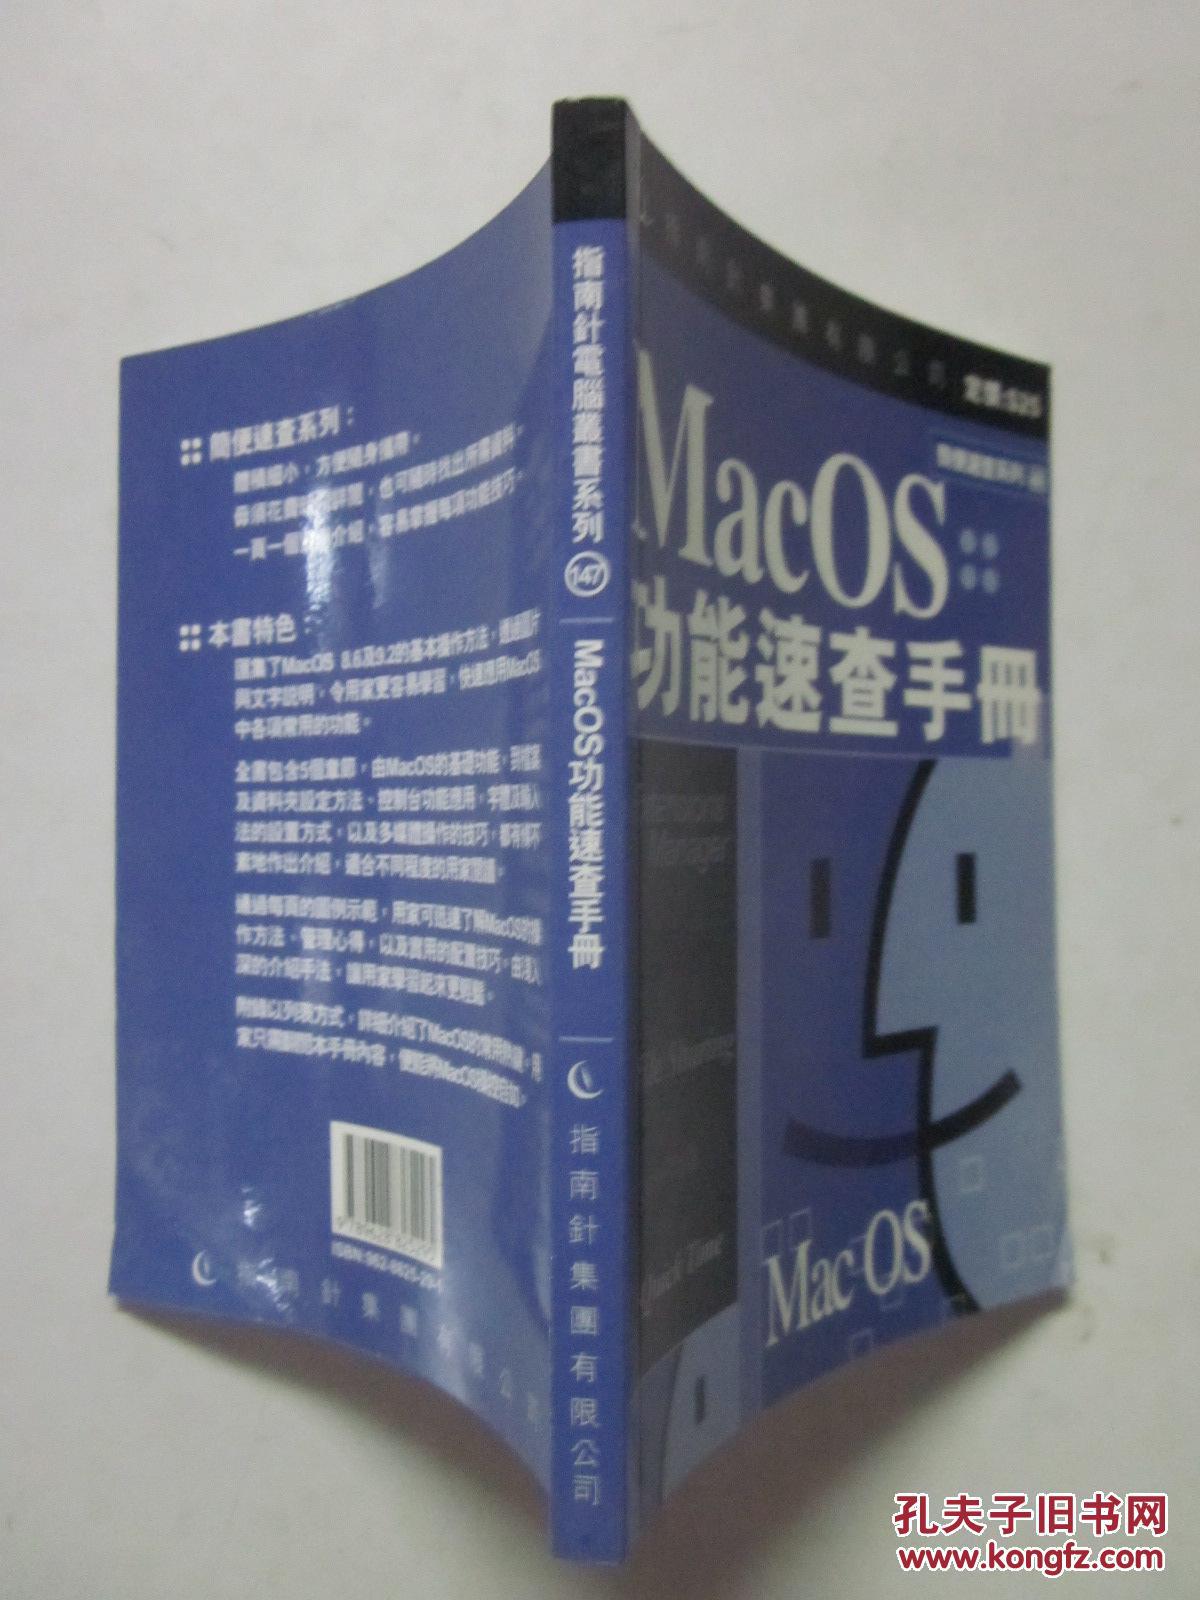 MacOS功能速查手册